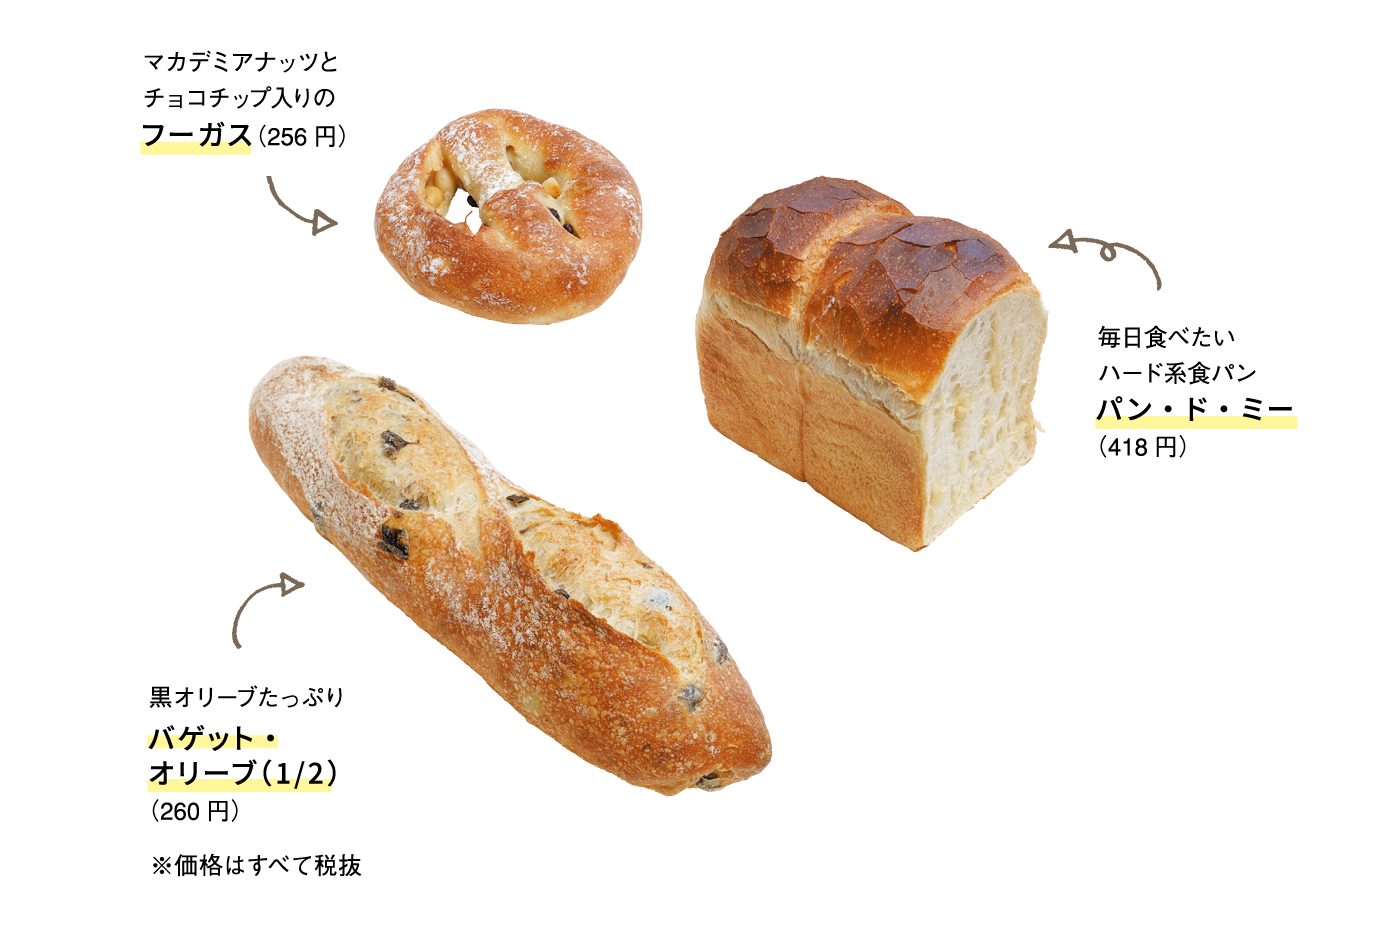 ハード系のパンが人気の「ブーランジェ・ペイザン」へ